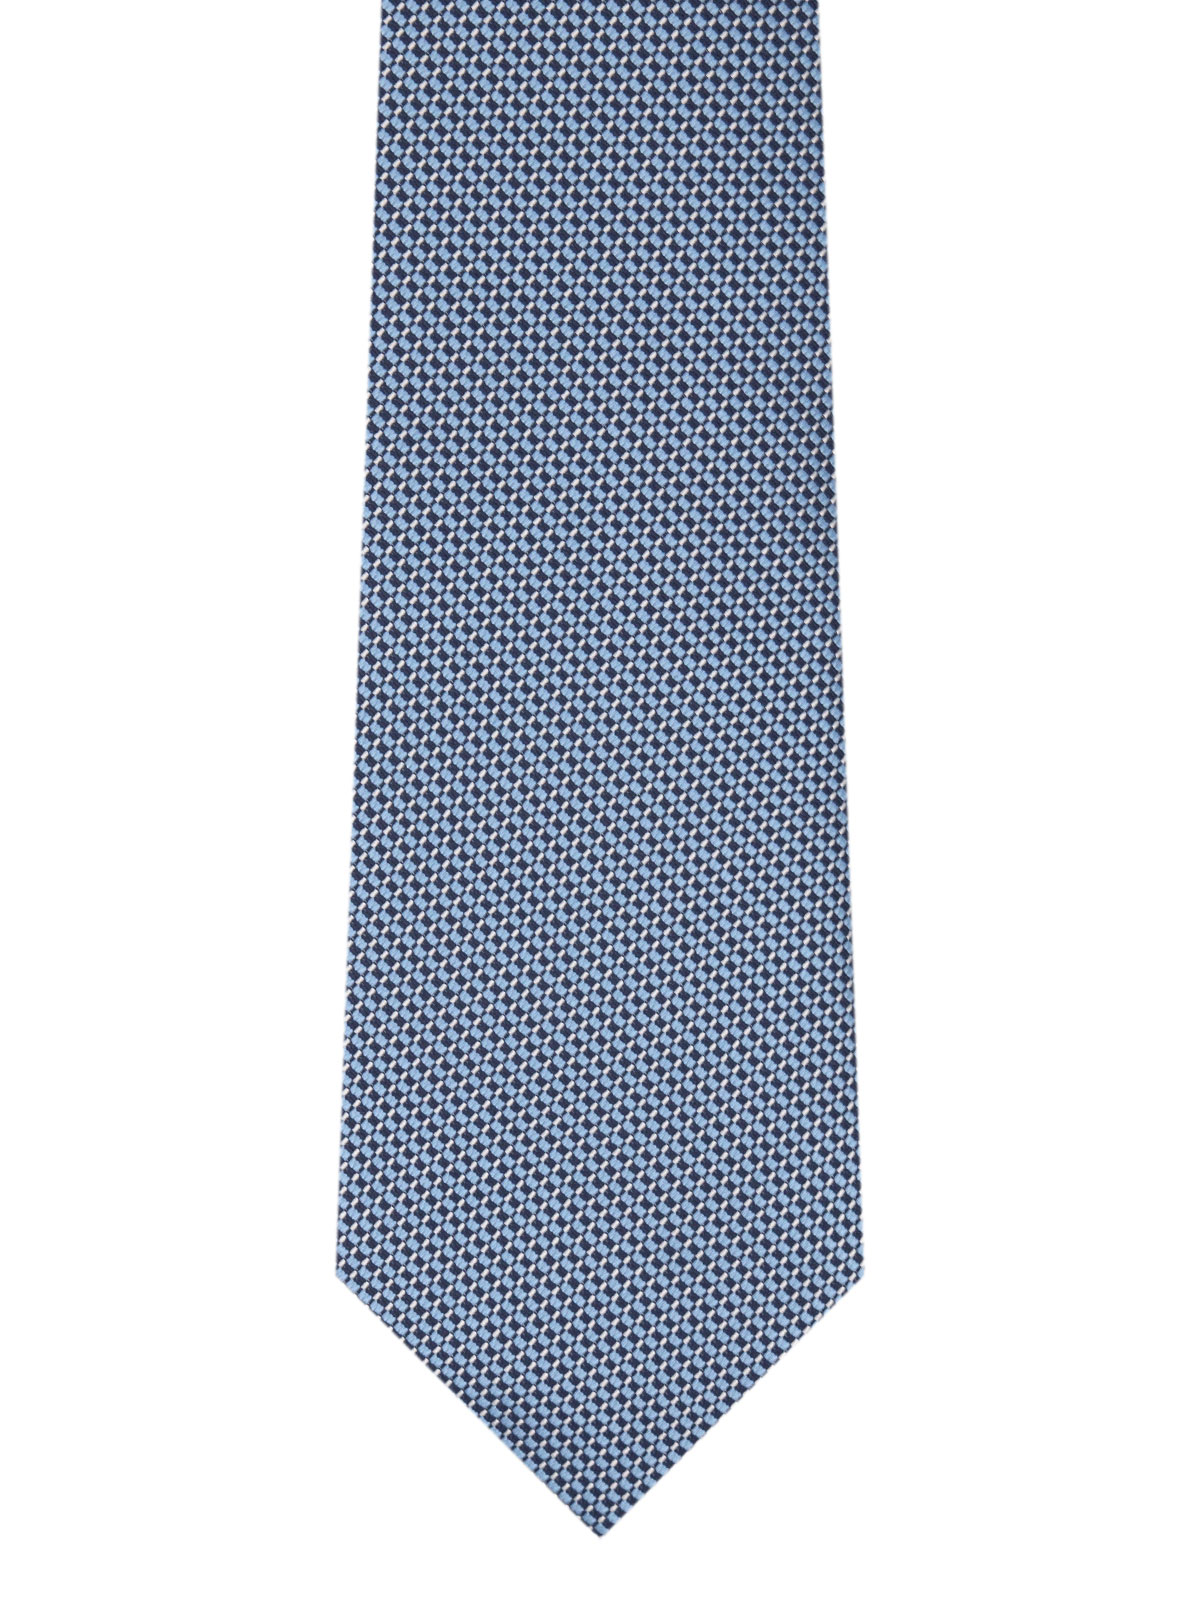 Δομημένη γραβάτα σε μπλε - 10189 - € 14.06 img2